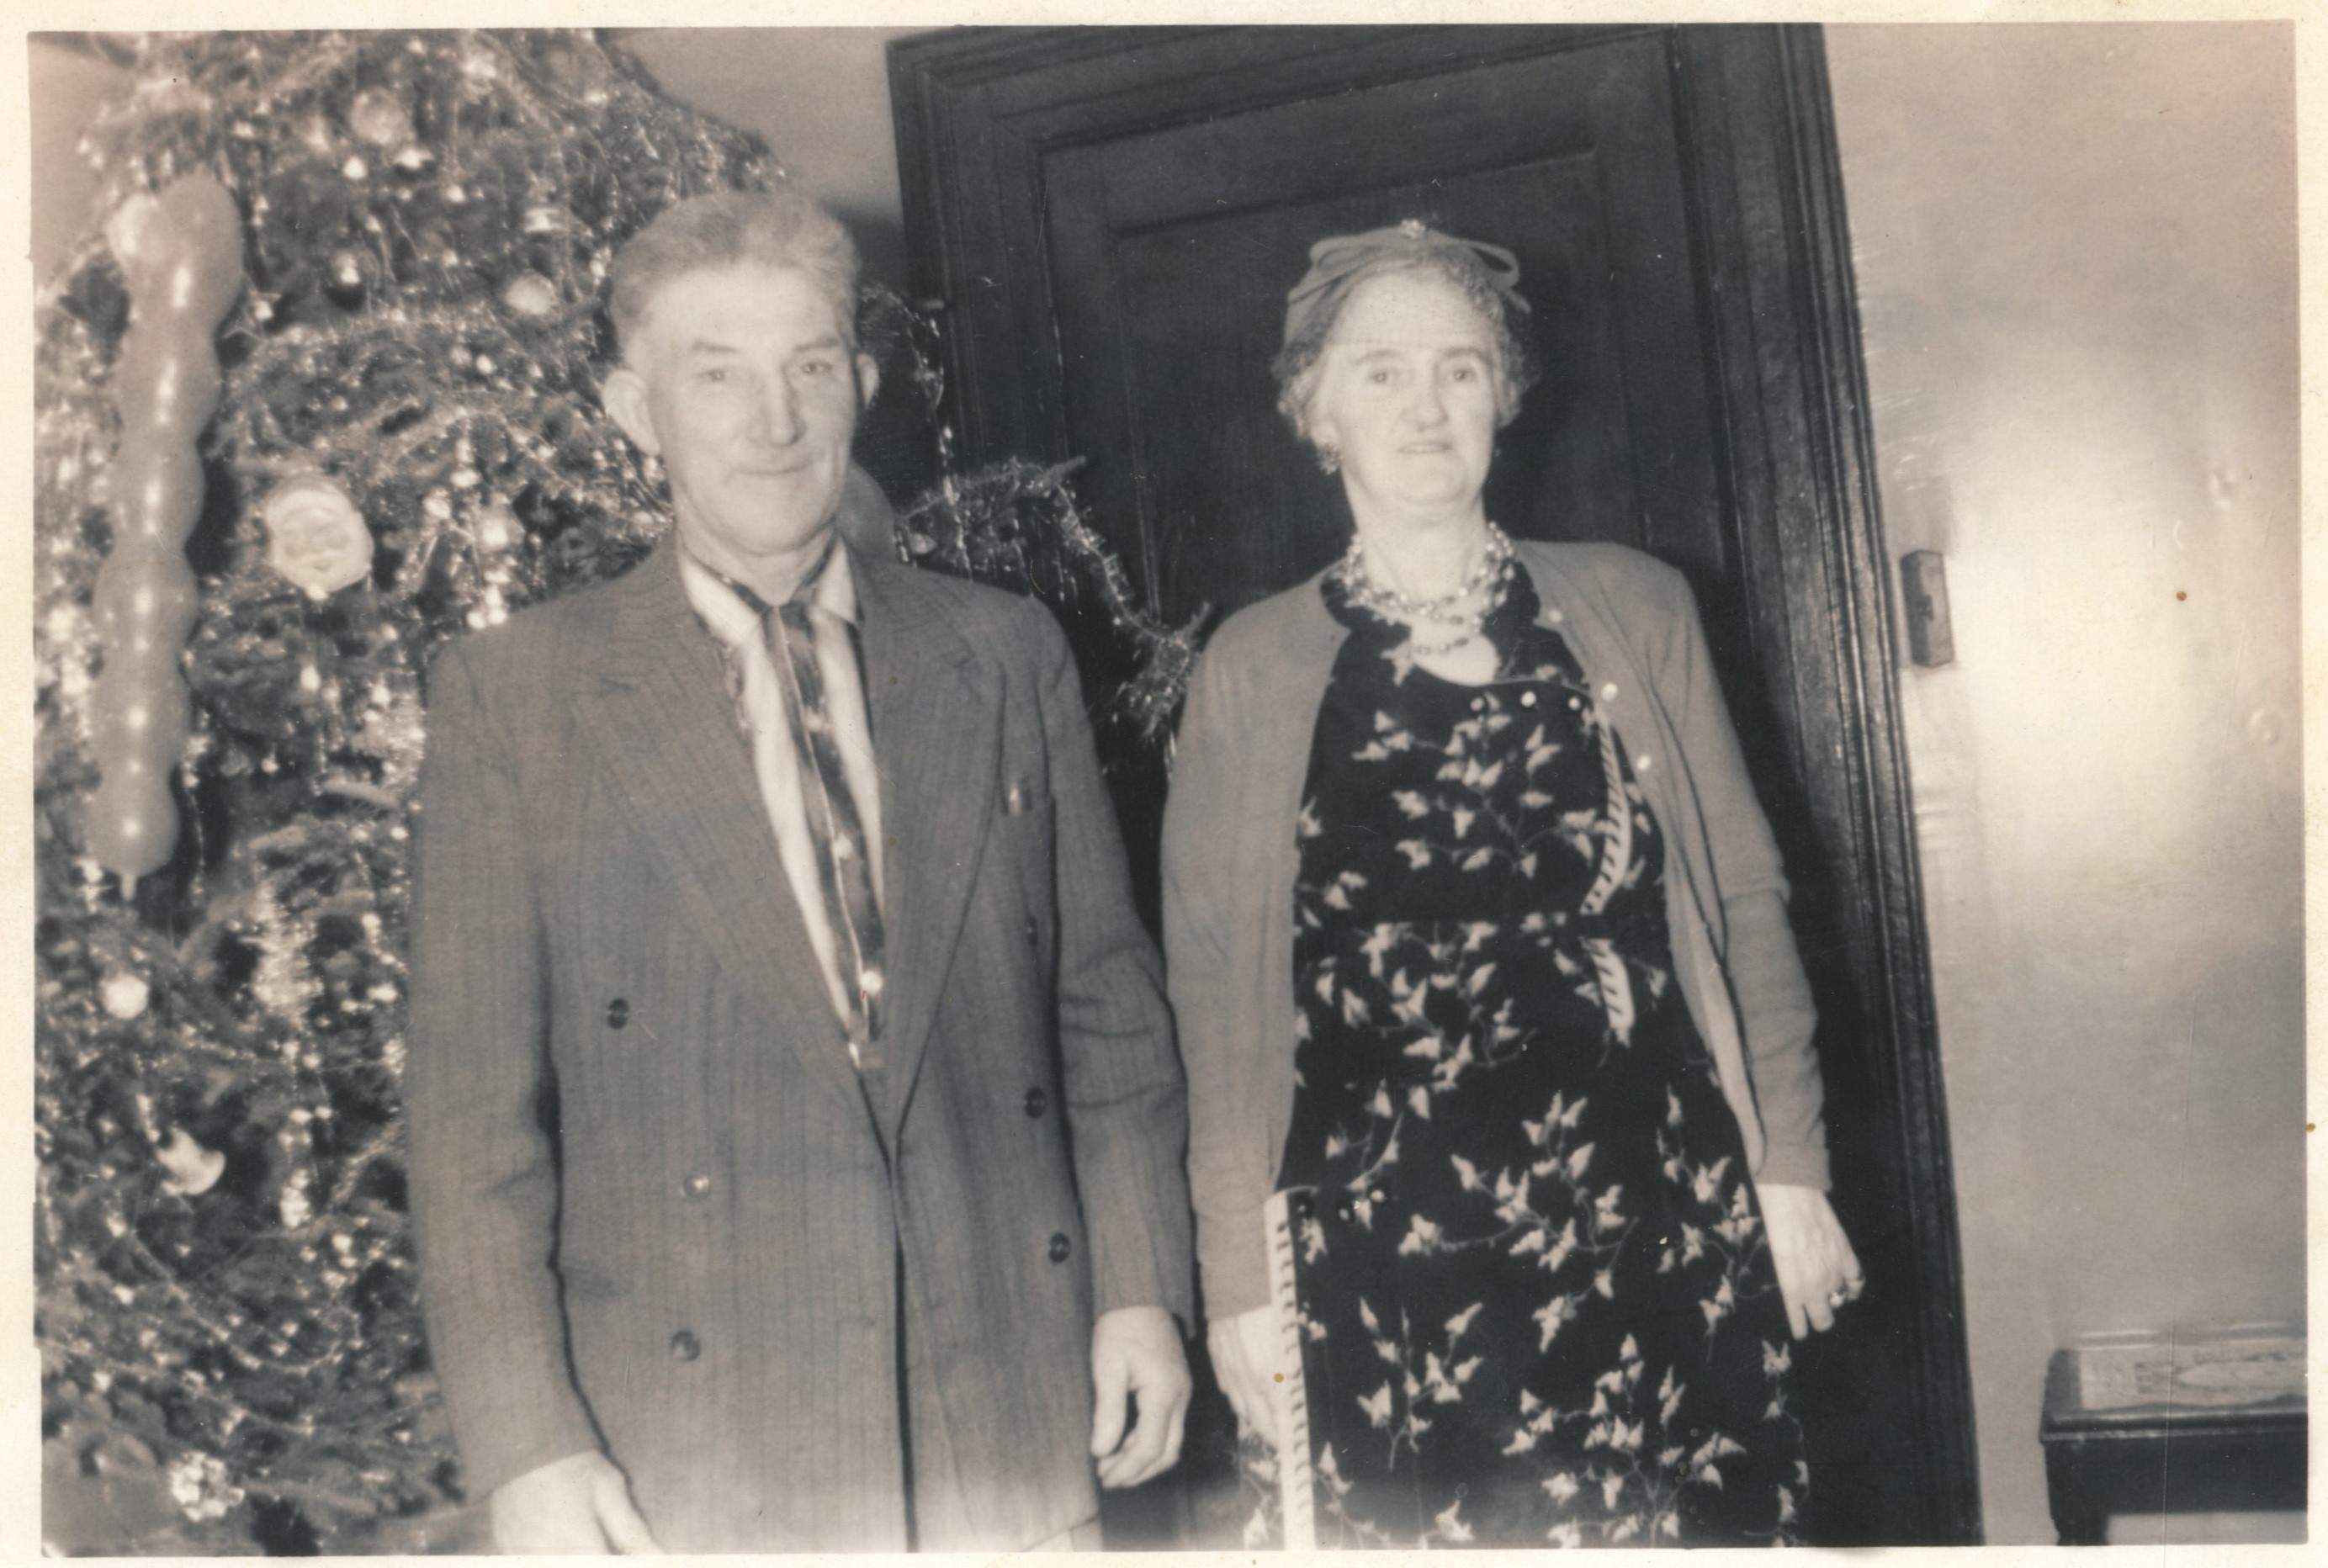 Photographie d’archive en noir et blanc d’un homme en costume et d’une femme portant une robe, un cardigan, un chapeau et un collier devant un arbre de Noël couvert de guirlandes et de décorations.